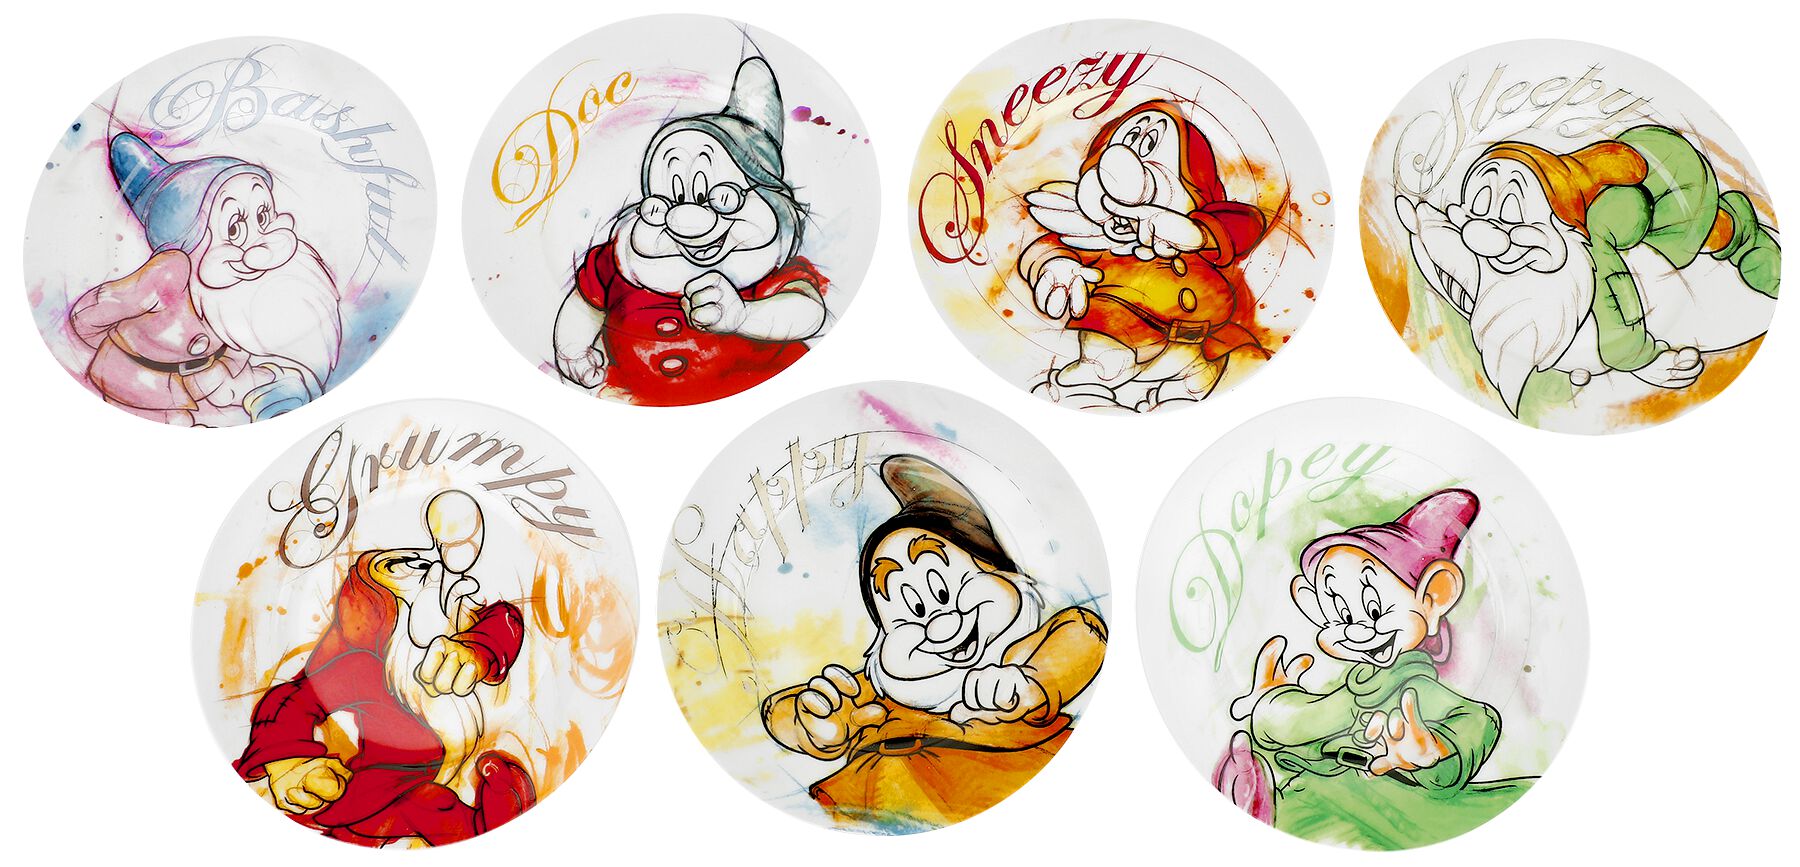 Schneewittchen - Disney Teller - 7 Zwerge - Teller-Set - multicolor  - Lizenzierter Fanartikel